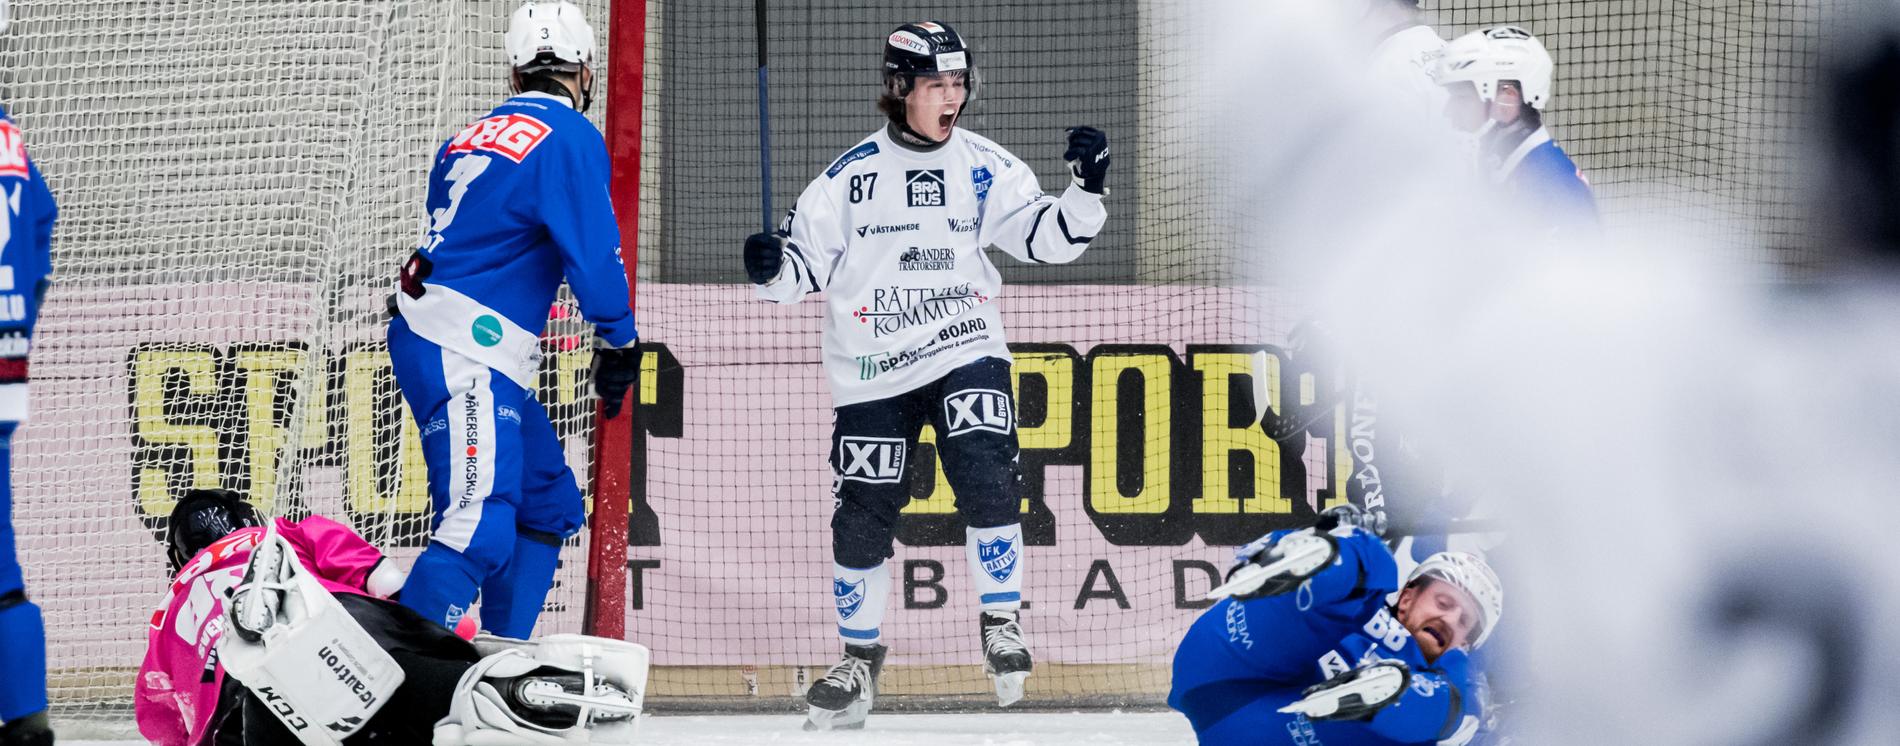 19-åriga Oskar Svensson gör mål på pappa Anders Svensson, 46.